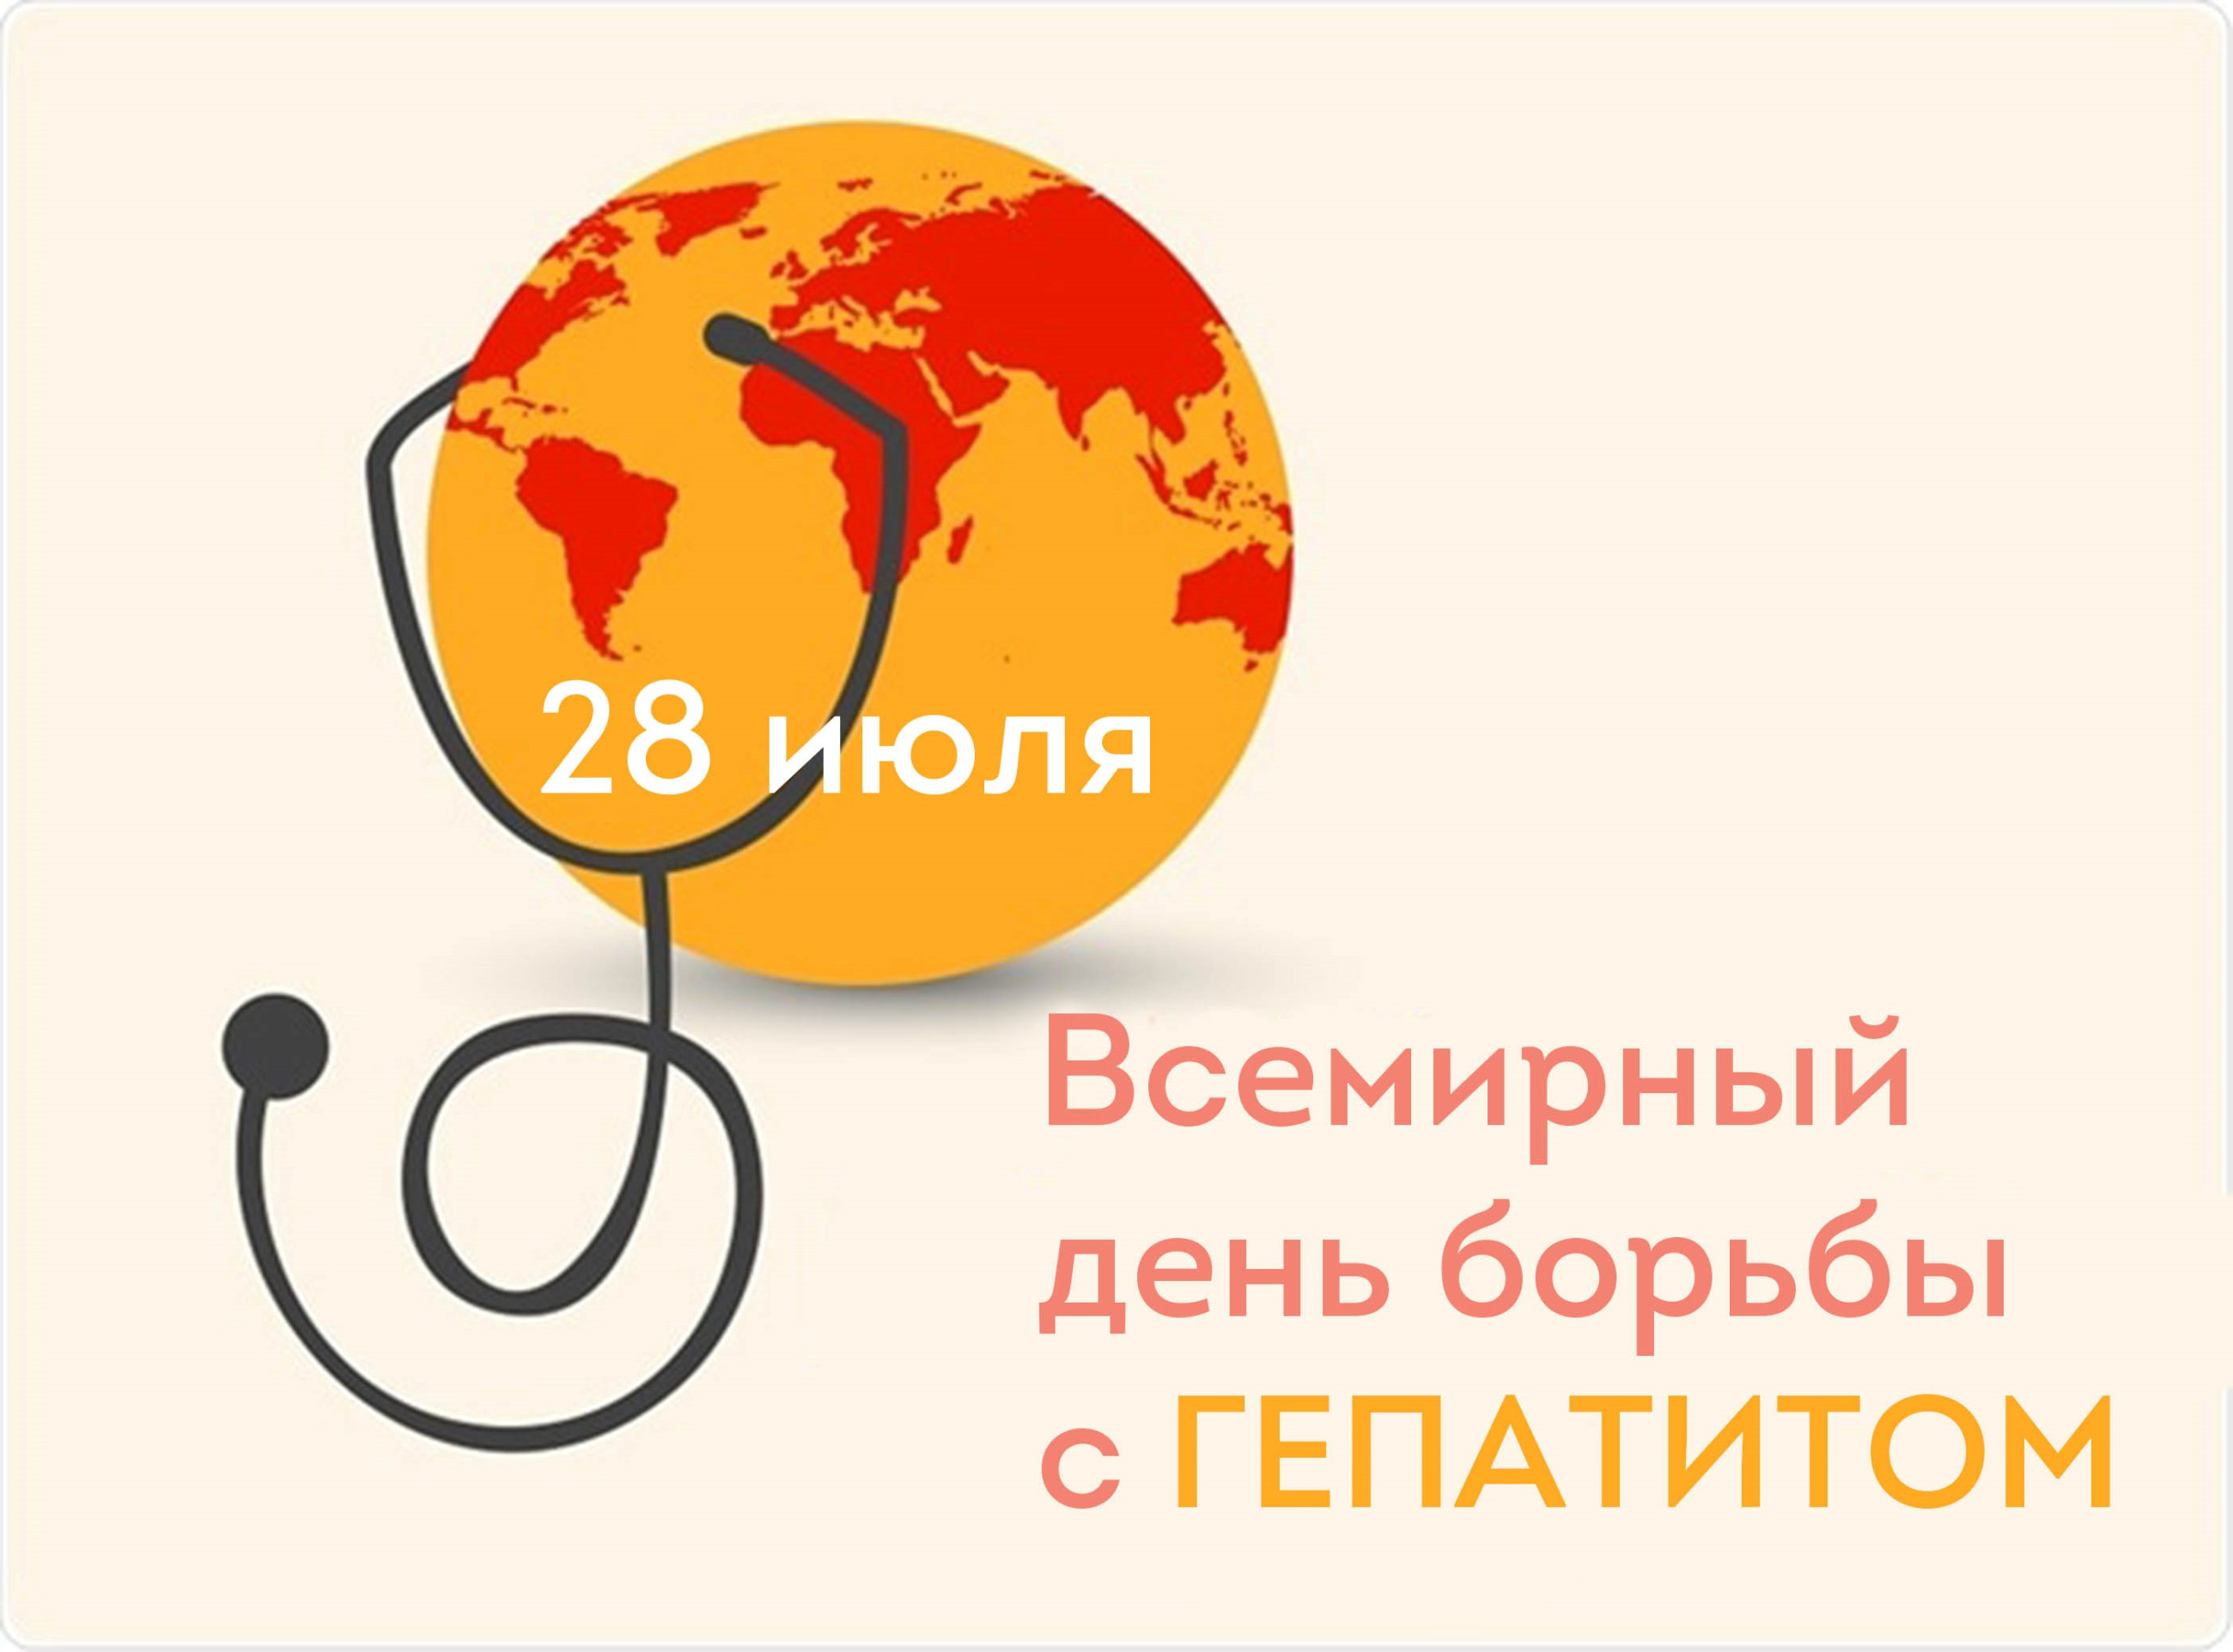 28 июля - Всемирный день борьбы с гепатитом.